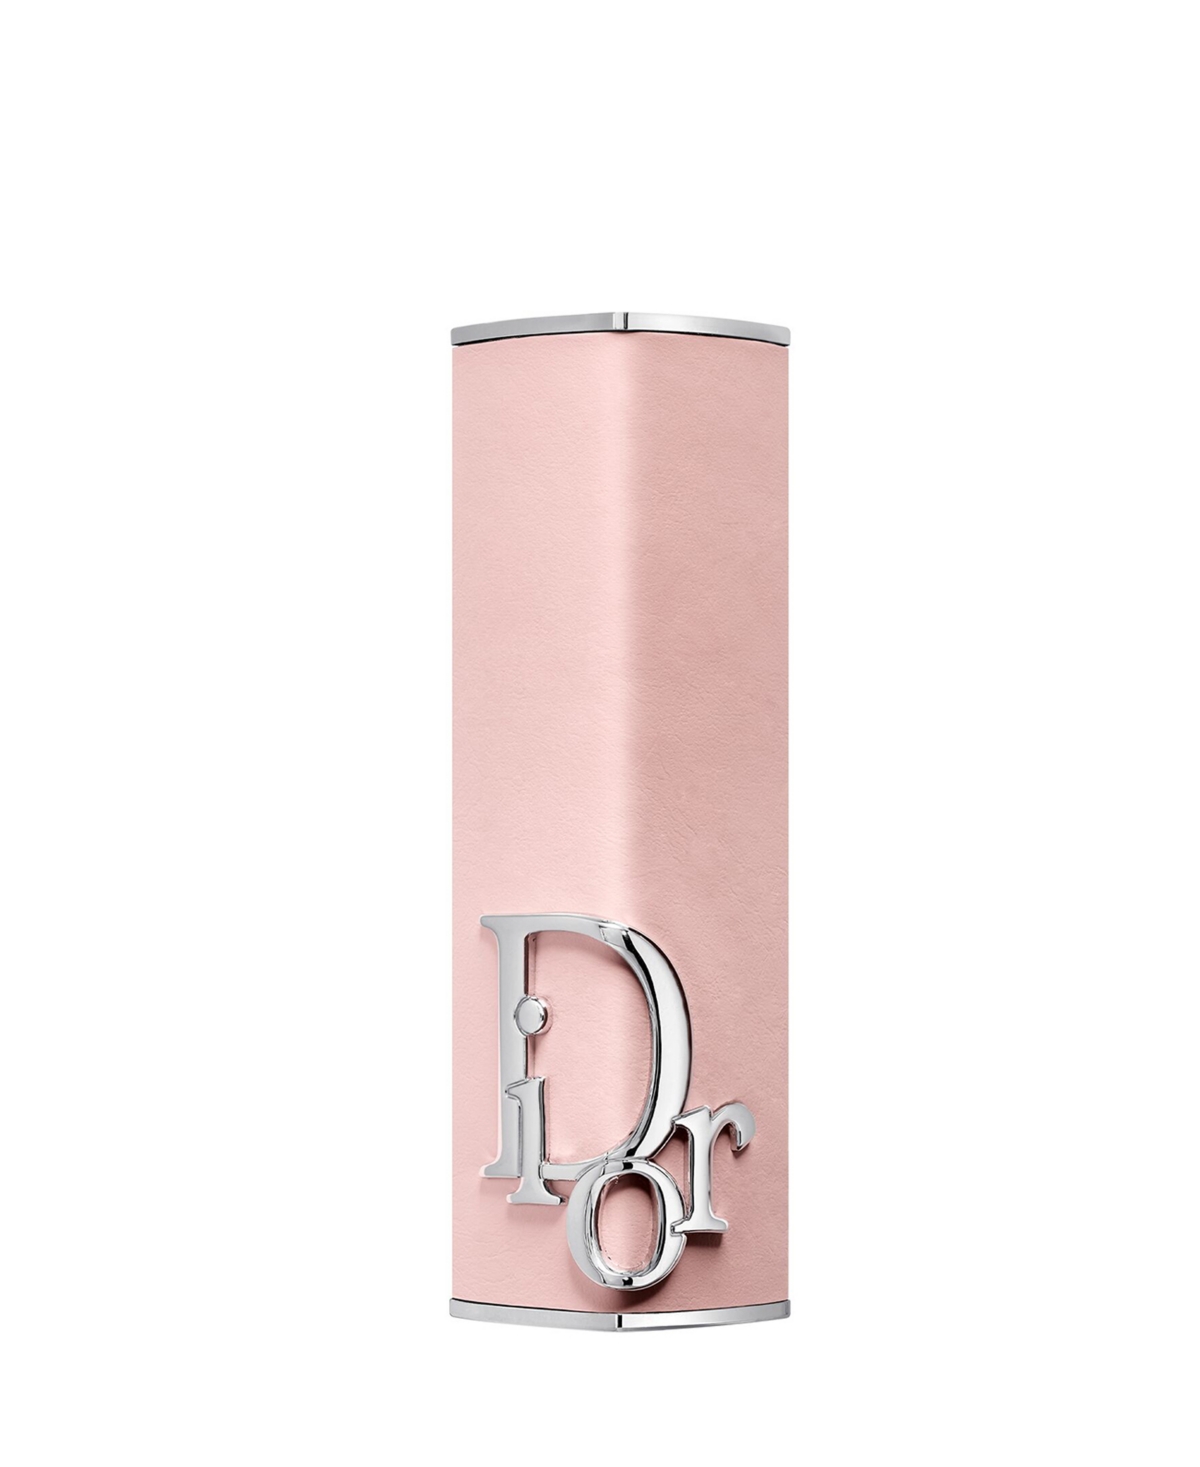 Dior Addict Refillable Couture Lipstick Case In Rose Montaigne